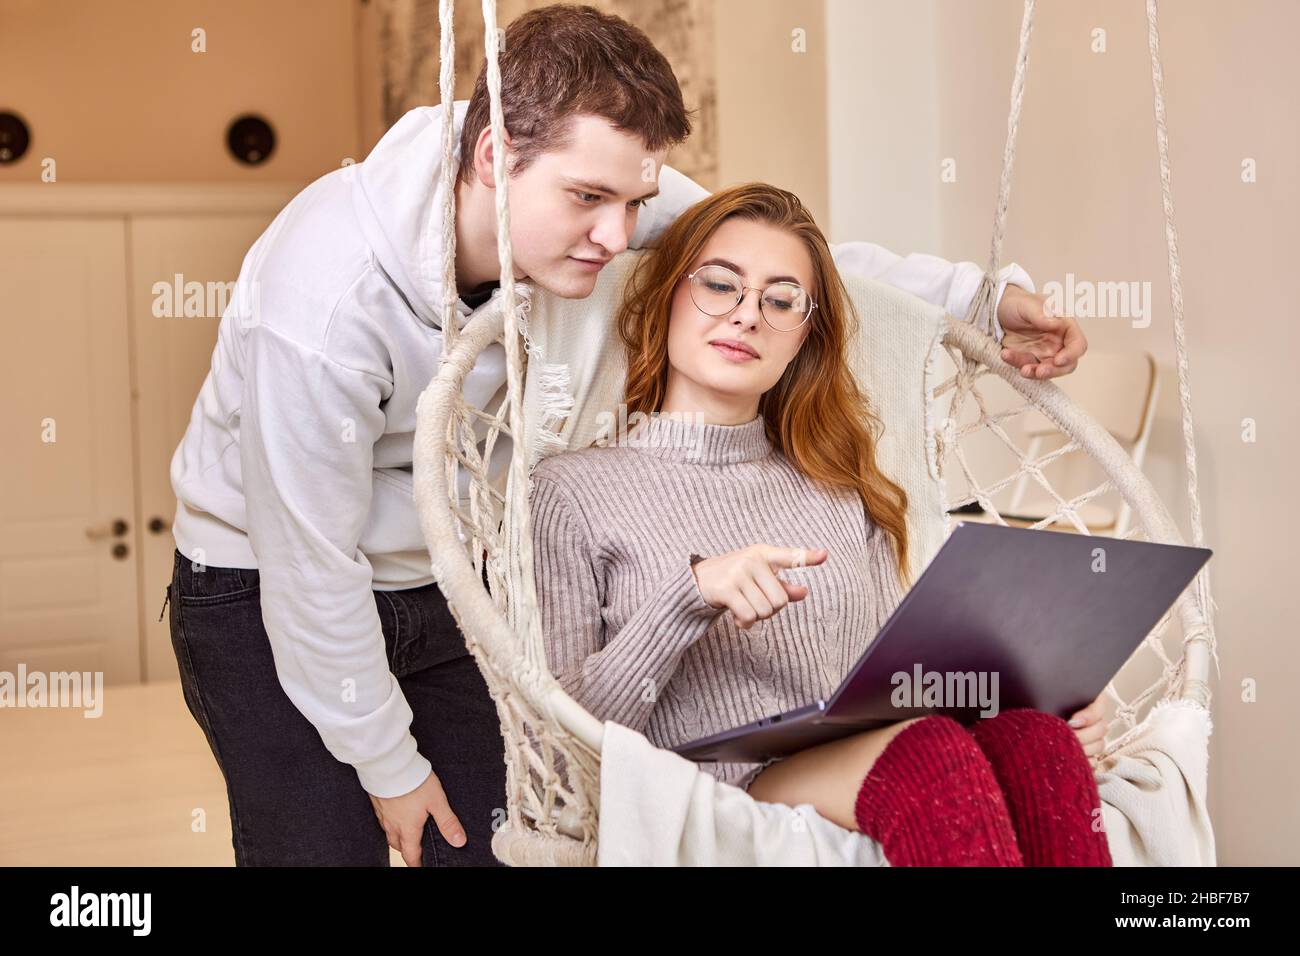 Während der Coronavirus-Sperre arbeitet sie von zu Hause aus und bittet ihren Mann um Hilfe bei der Verbindung mit einem Remote-Desktop. Stockfoto